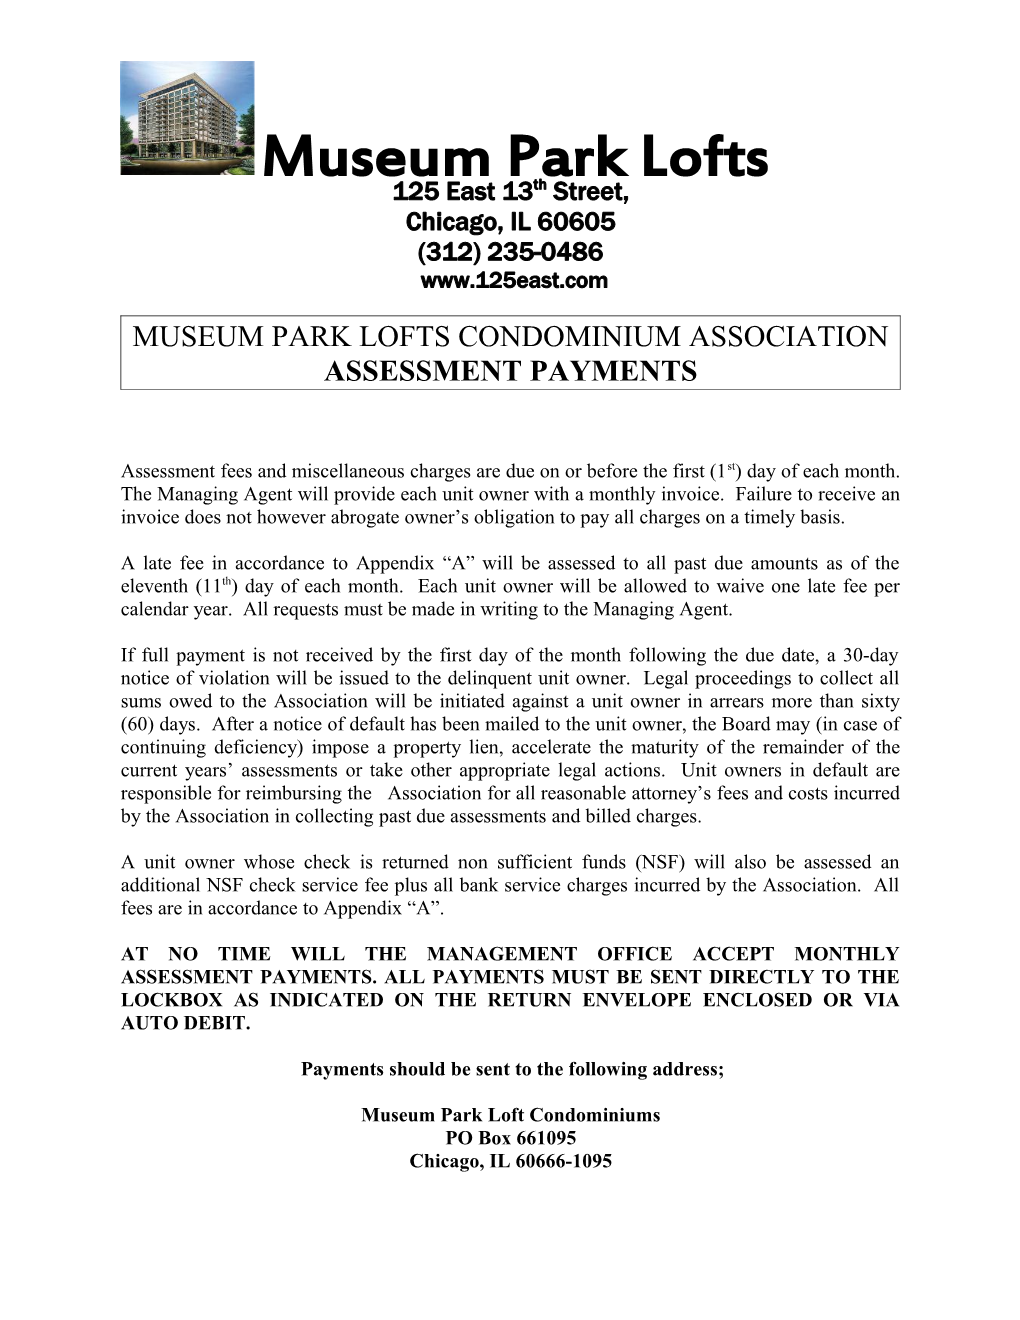 Museum Park Lofts Condominium Association